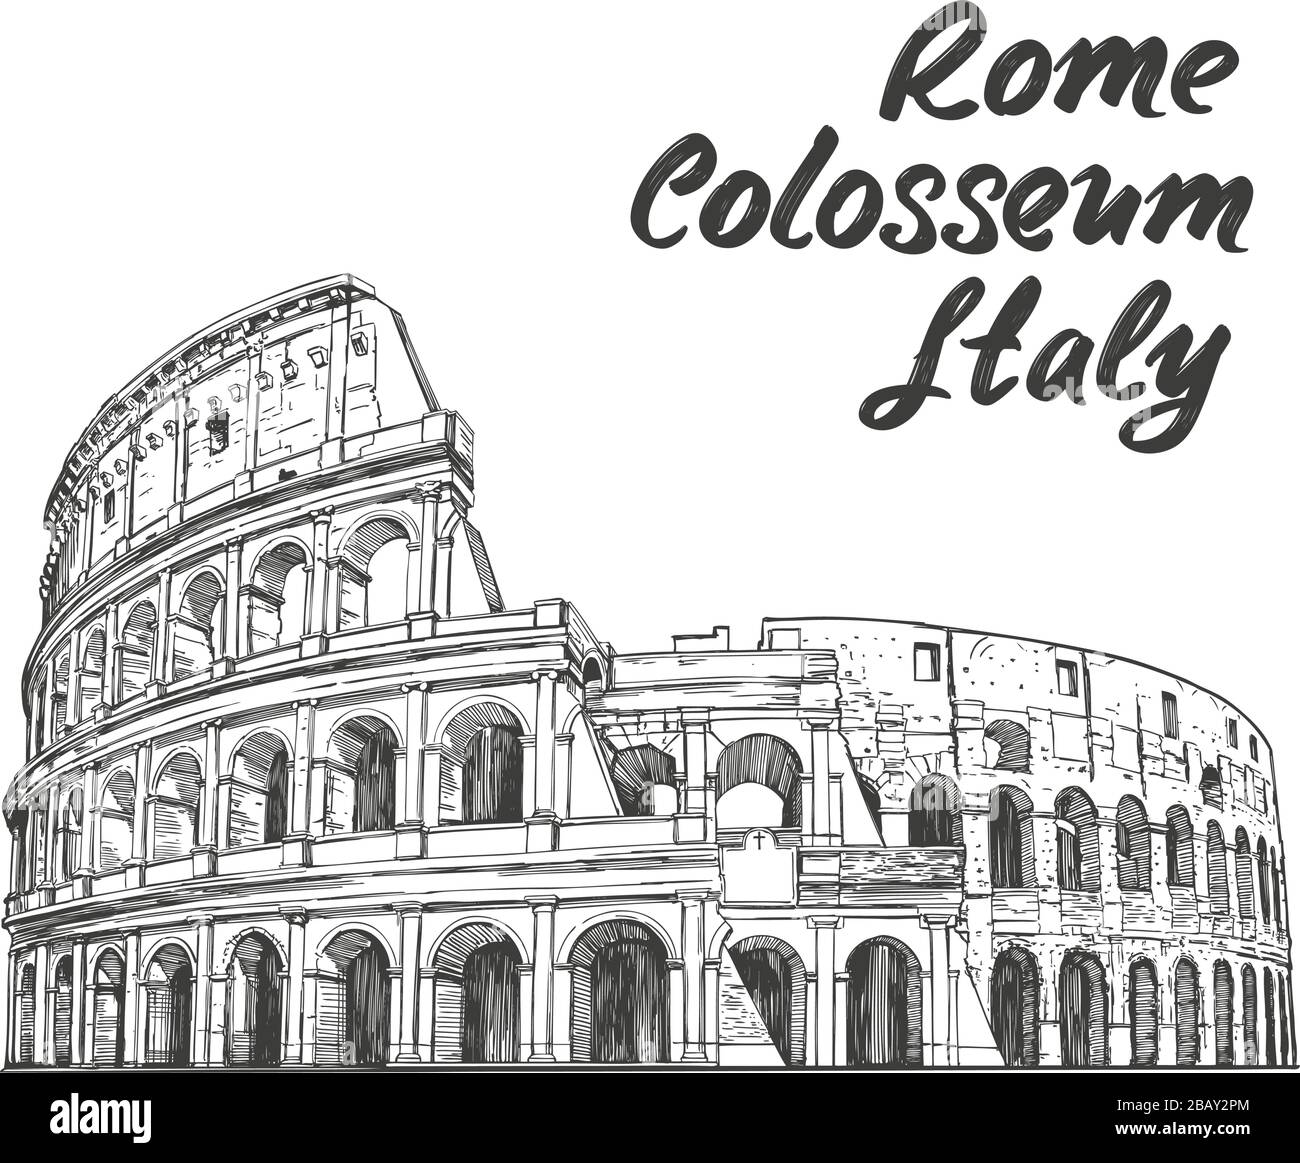 Colosseo, un antico anfiteatro, un monumento storico architettonico di Roma, Italia. Disegno vettoriale disegnato a mano, isolato su un bianco Illustrazione Vettoriale